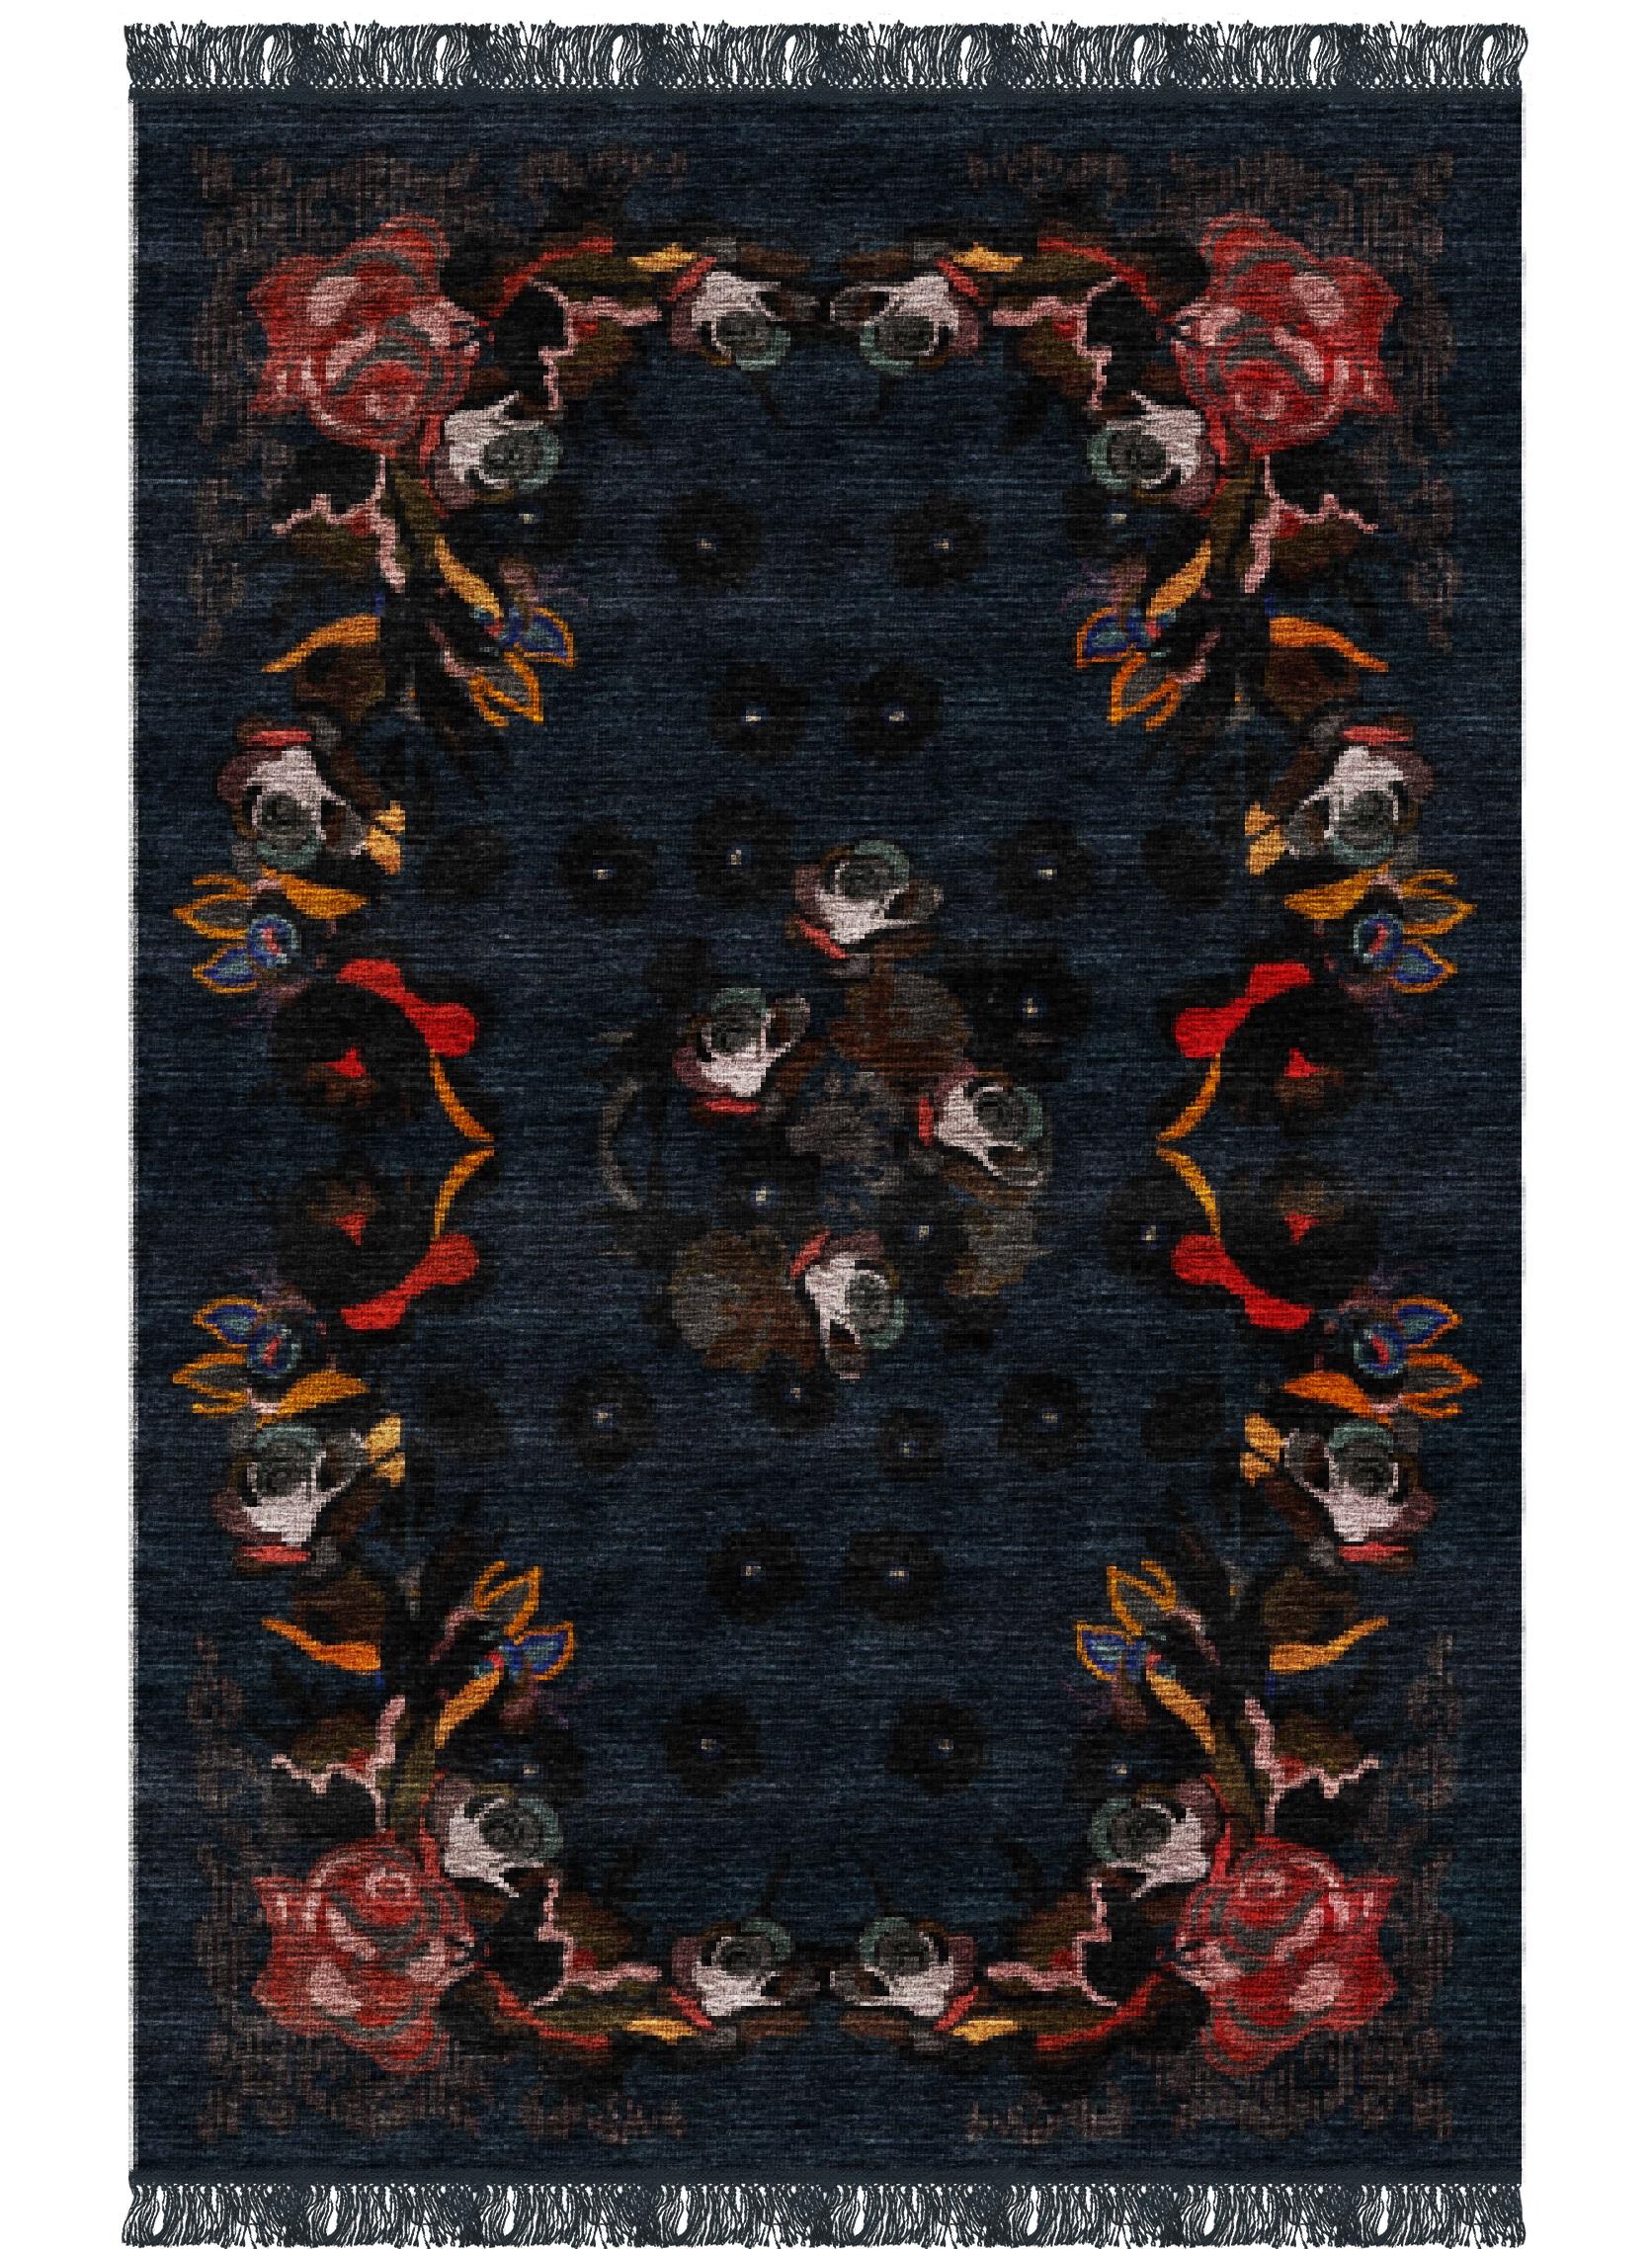 Fiori-Teppich II von Giulio Brambilla
Abmessungen: D 300 x B 200 x H 0,5 cm
MATERIALIEN: NZ-Wolle, Melange-Garn

Eine fesselnde Komposition, inspiriert von georgischer Kunst, ist dieser exquisite Teppich, ein zeitgenössisches Design des Künstlers